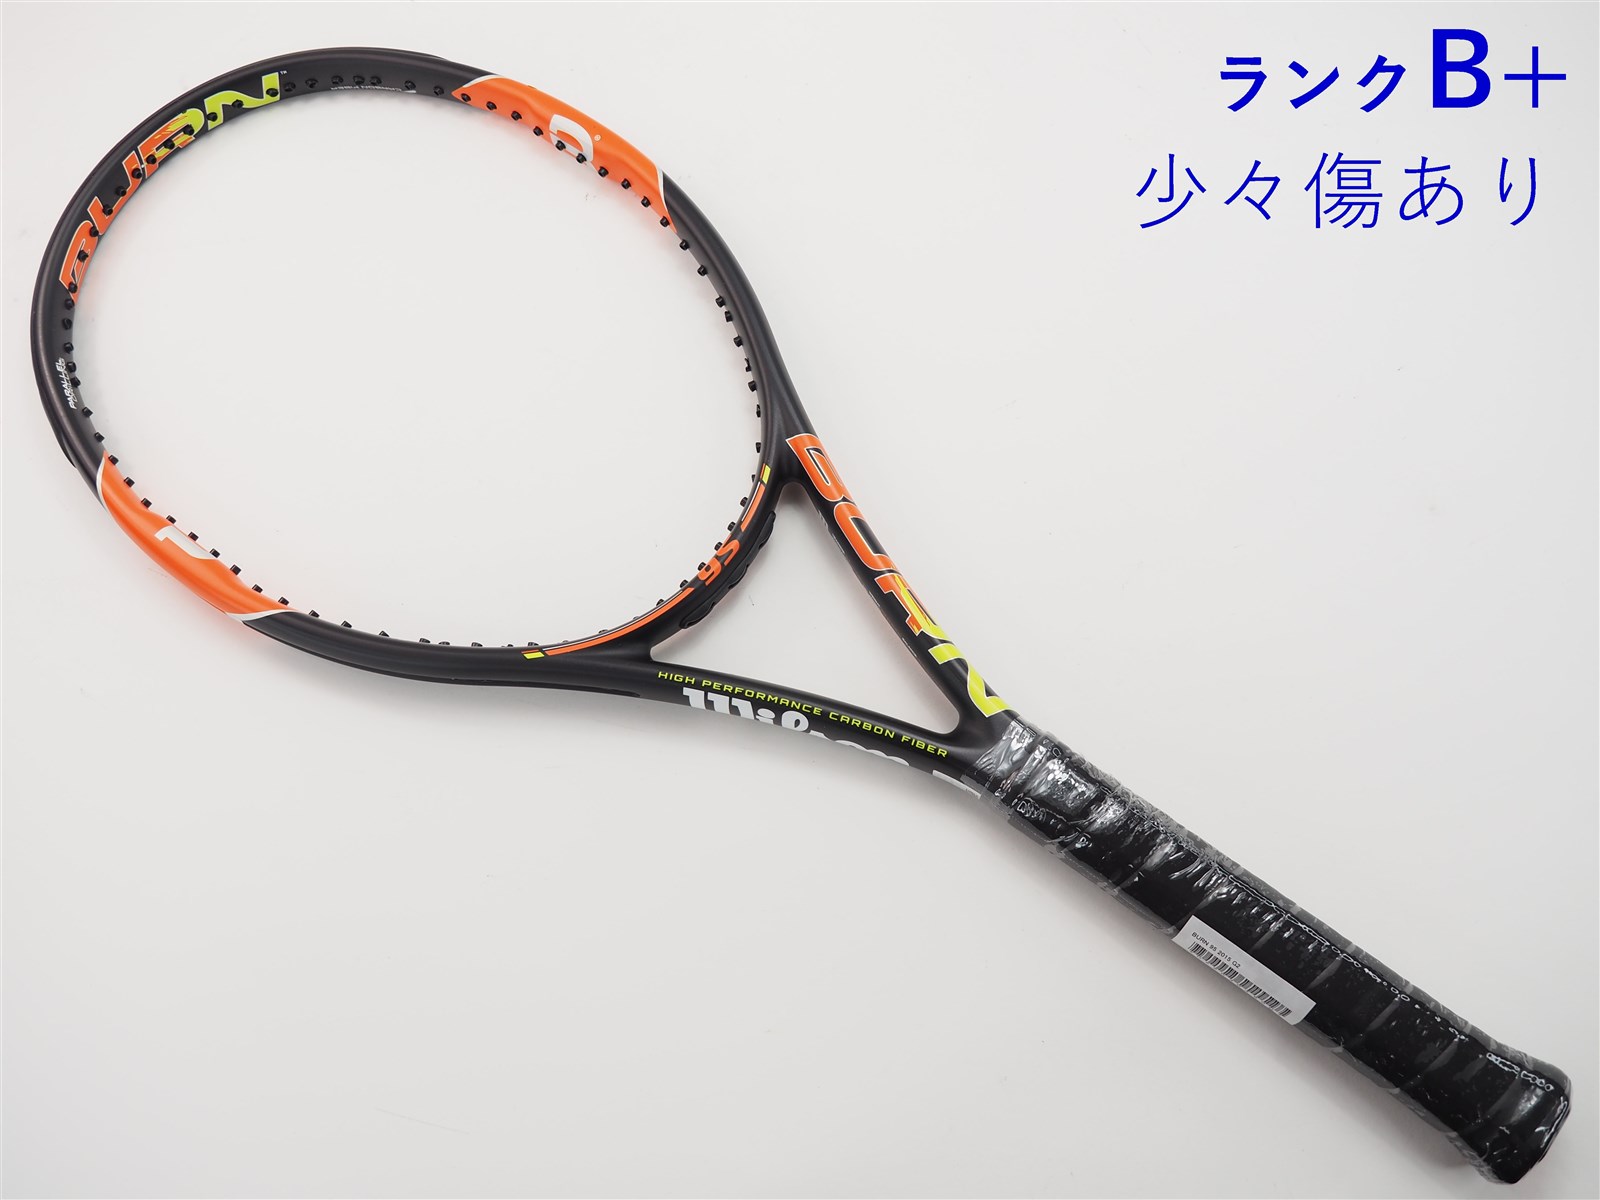 【中古】ウィルソン バーン 95 2015年モデルWILSON BURN 95 2015(G2)【中古 テニスラケット】【送料無料】